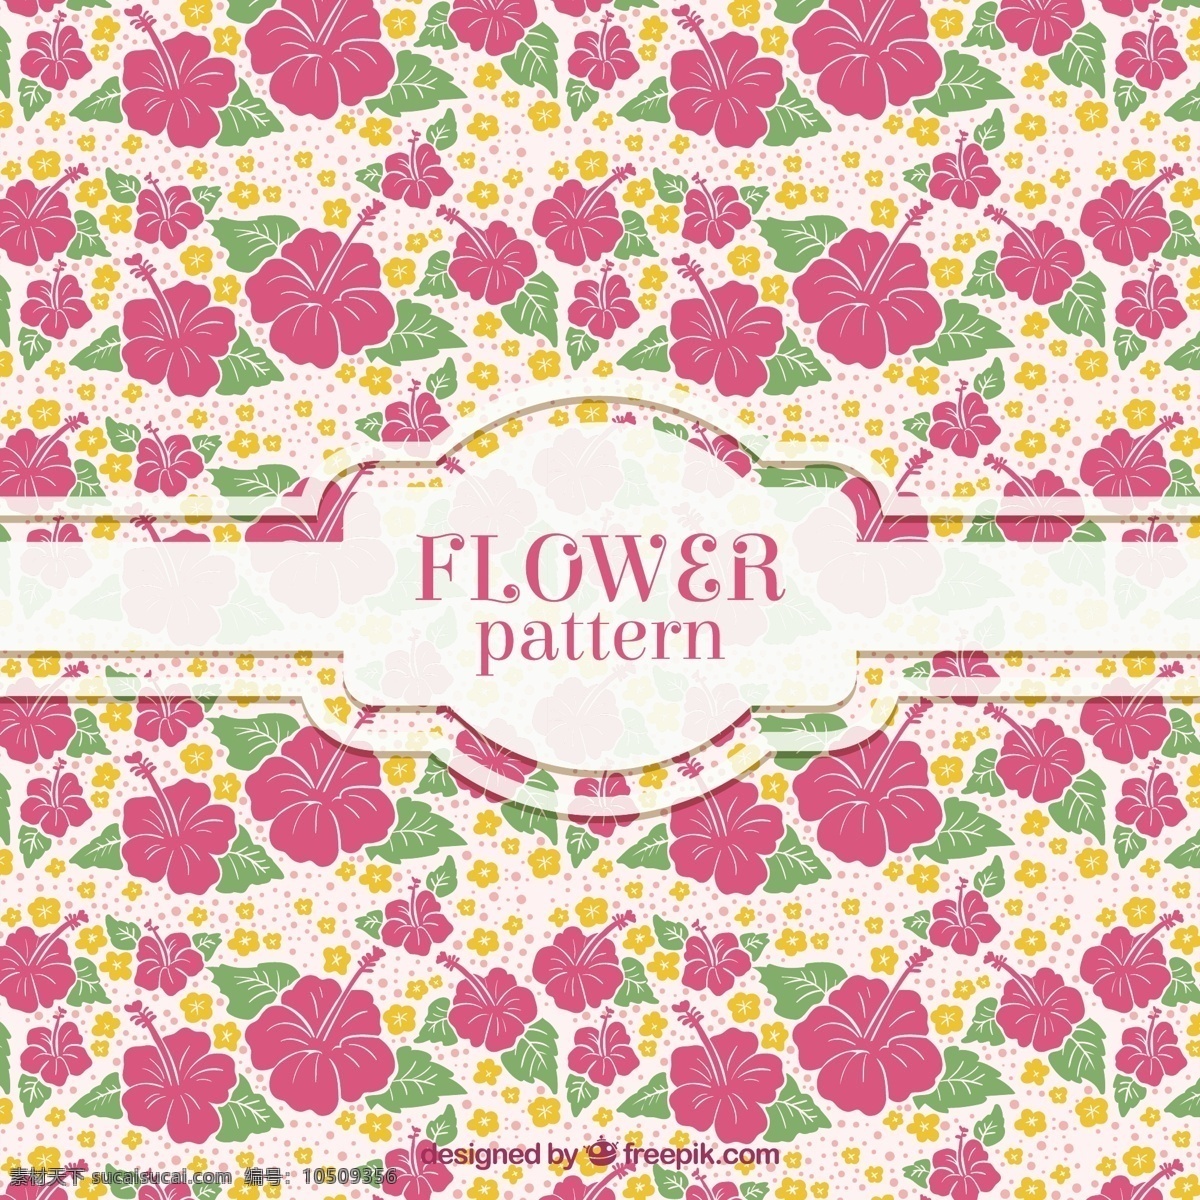 粉红色 花朵 平面 图案 背景 花卉 自然 花卉背景 花卉图案 装饰 无缝模式 平面设计 自然背景